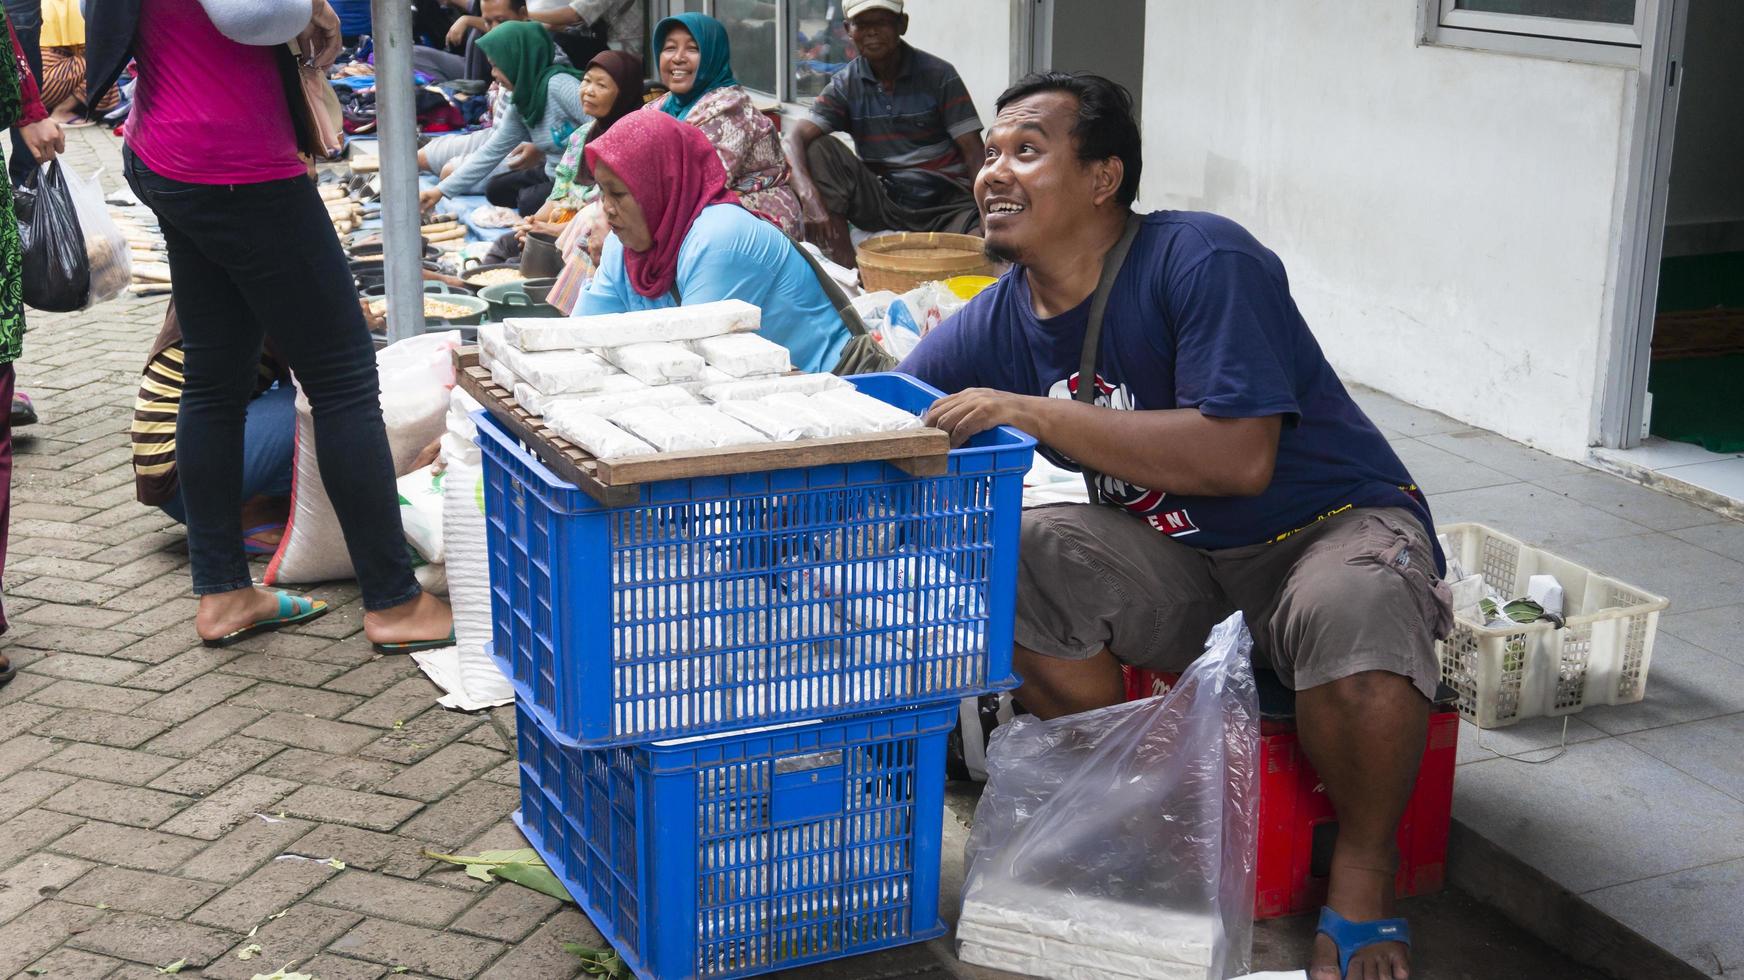 ponorogo, jawa timur, indonesien- 01-02-2020 Menschen, die auf traditionellen Märkten mit einer Vielzahl von Waren handeln. lokale Produkte und importierte Produkte sind die Produkte der Wahl für Käufer foto